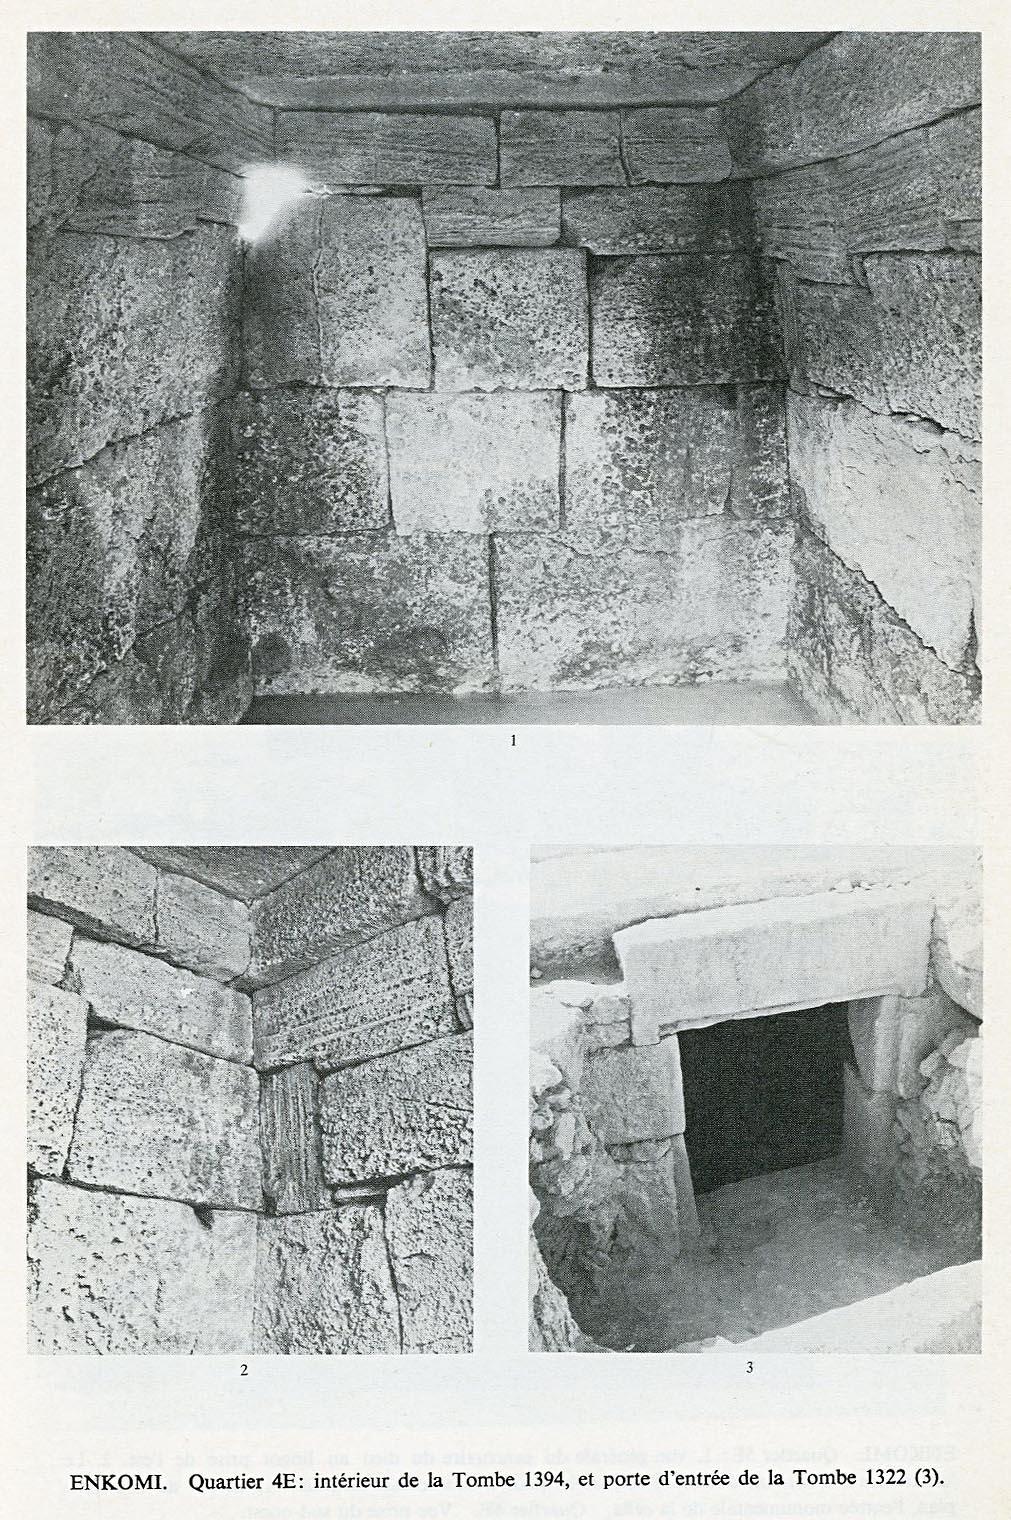 Το εσωτερικό του κτιστού τάφου 1394 και